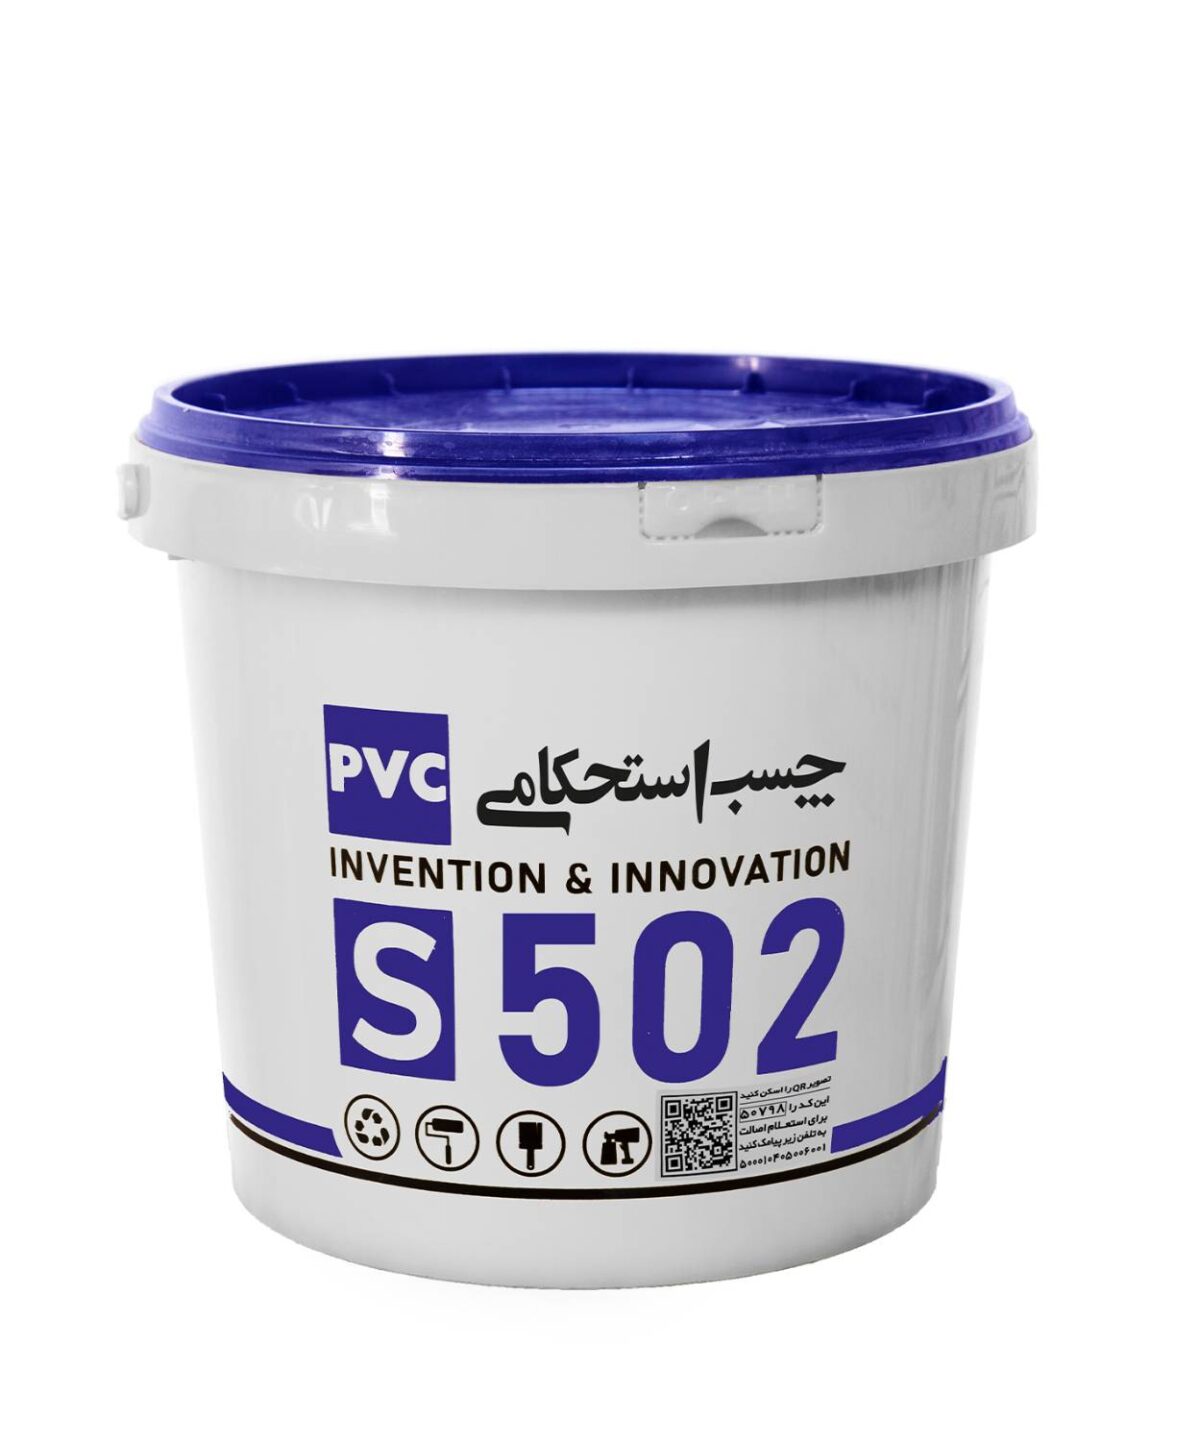 چسب استحکامی PVC S502 خمیری 8 کیلوگرمی - شرکت آکوارزین